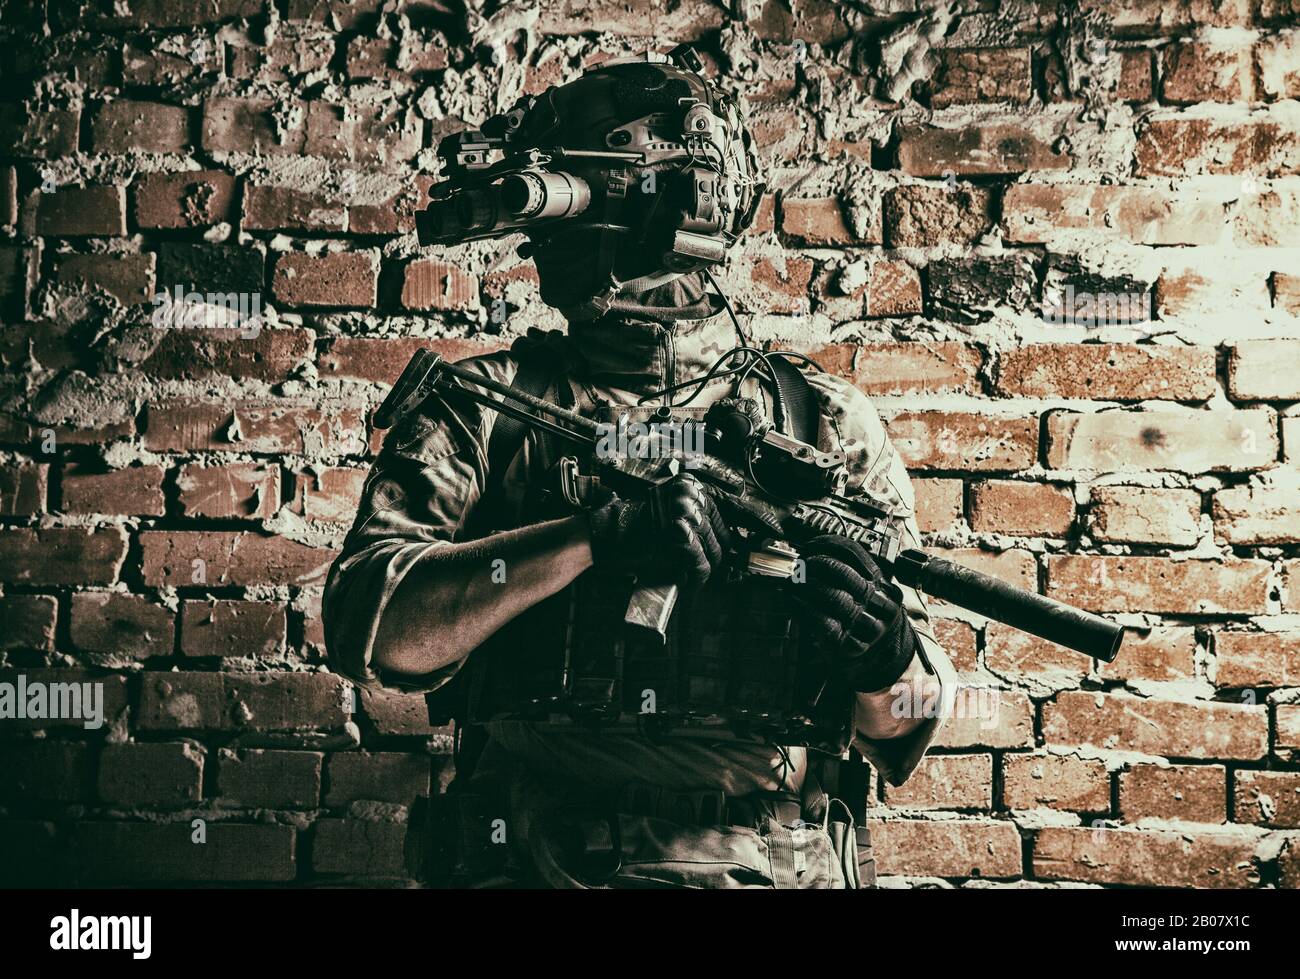 Armee Spezialeinsatzkräfte taktischer Gruppenjäger in der cqb-Mission, mit Funk-Headset, Blick durch die Nachtsicht mit vier Objektiven, Wärmebildgerät auf Helm, bewaffnete kleine Untermaschinenpistole mit Schalldämpfer Stockfoto